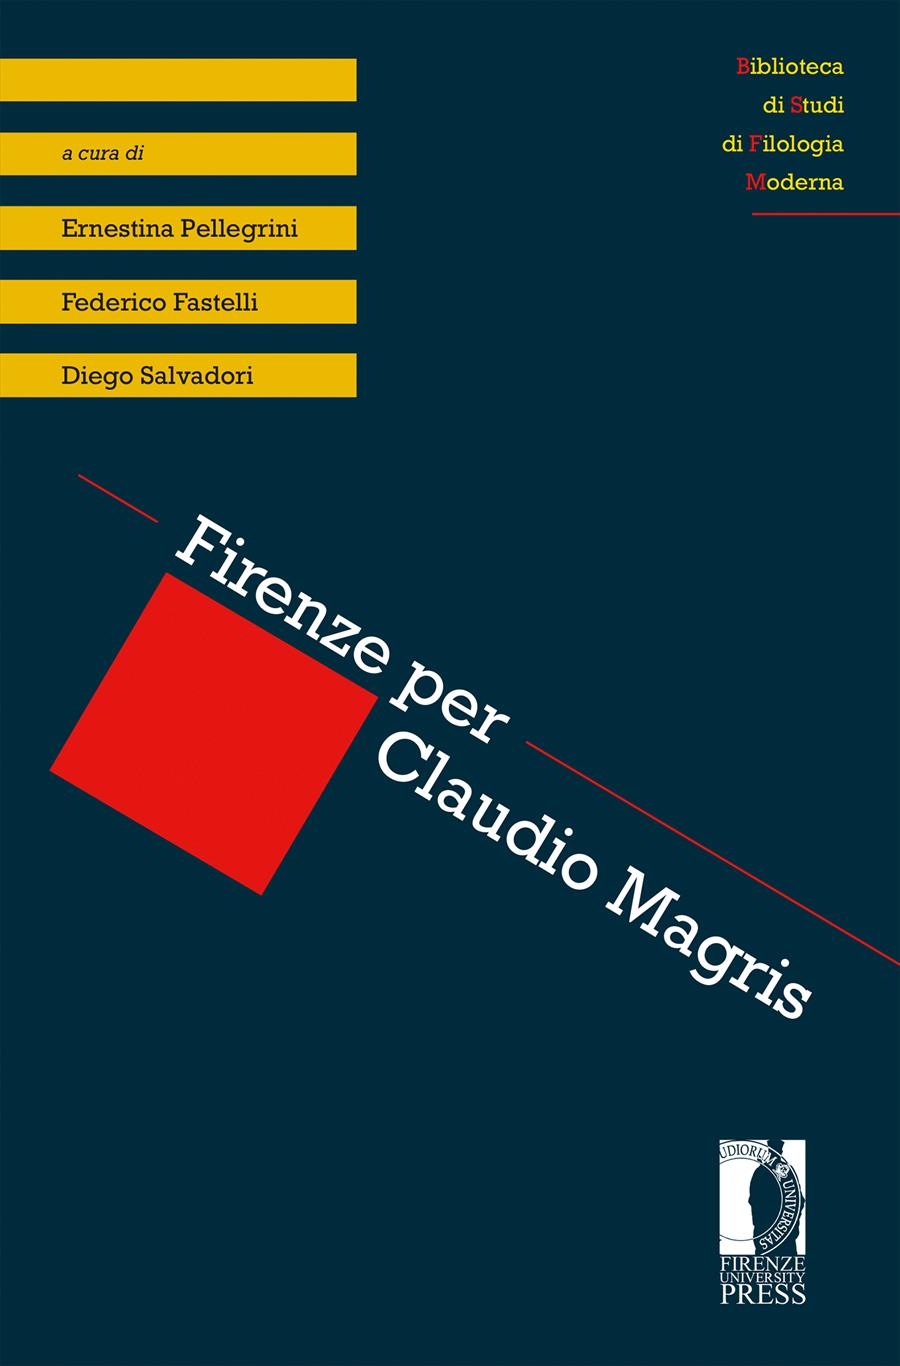 Firenze per Claudio Magris [book cover]